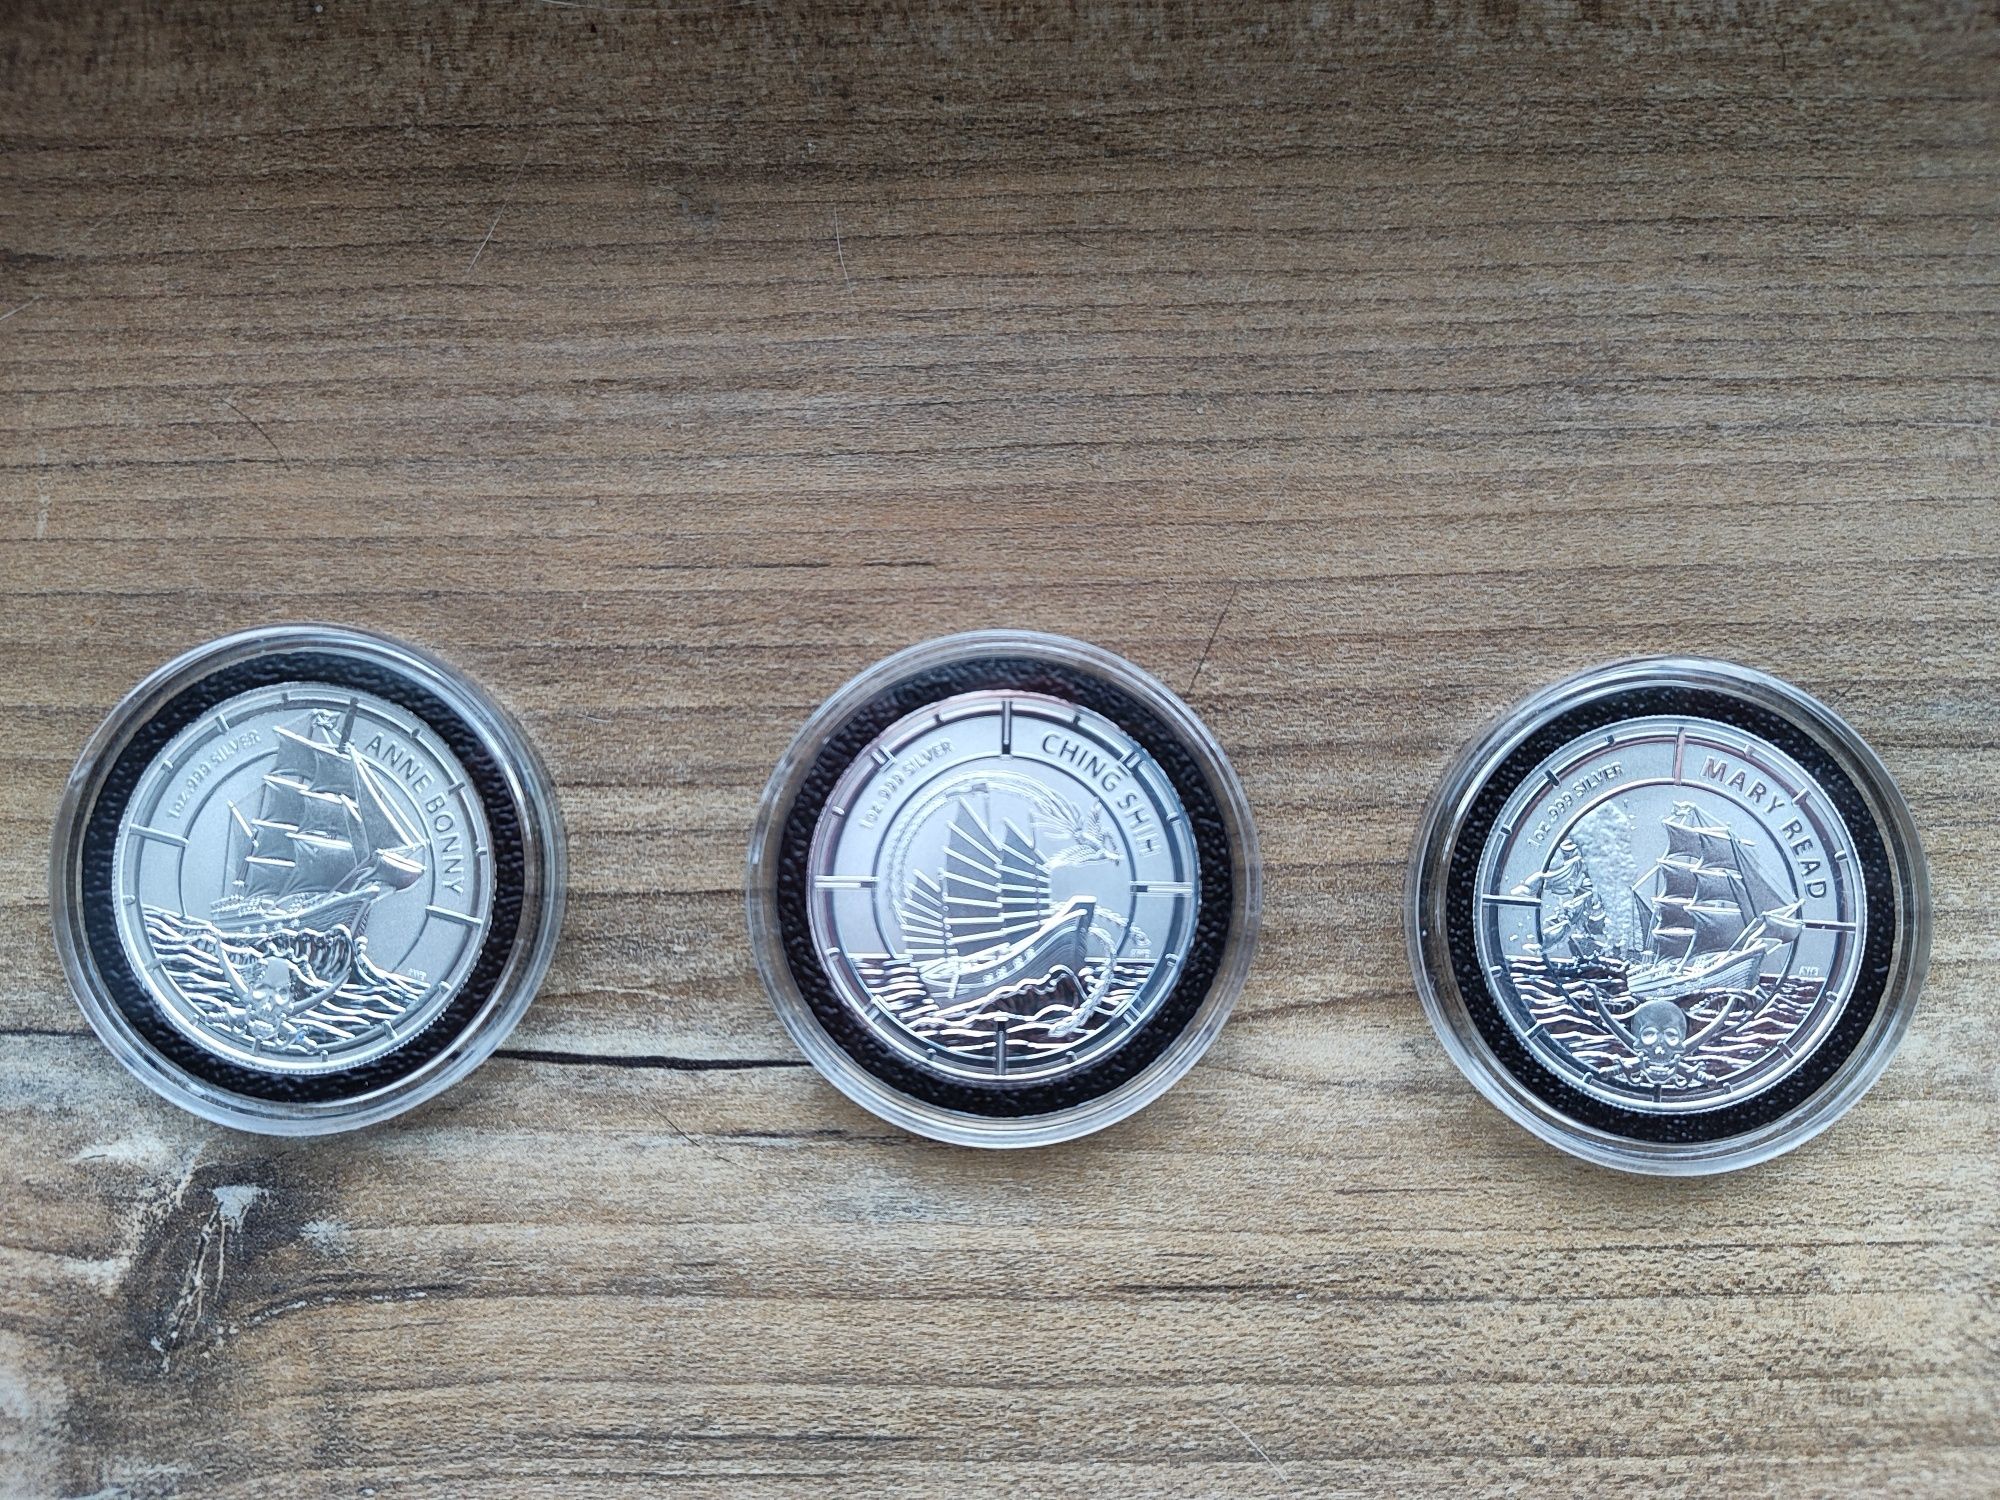 Sprzedam srebrne monety z serii Pirate Queens.